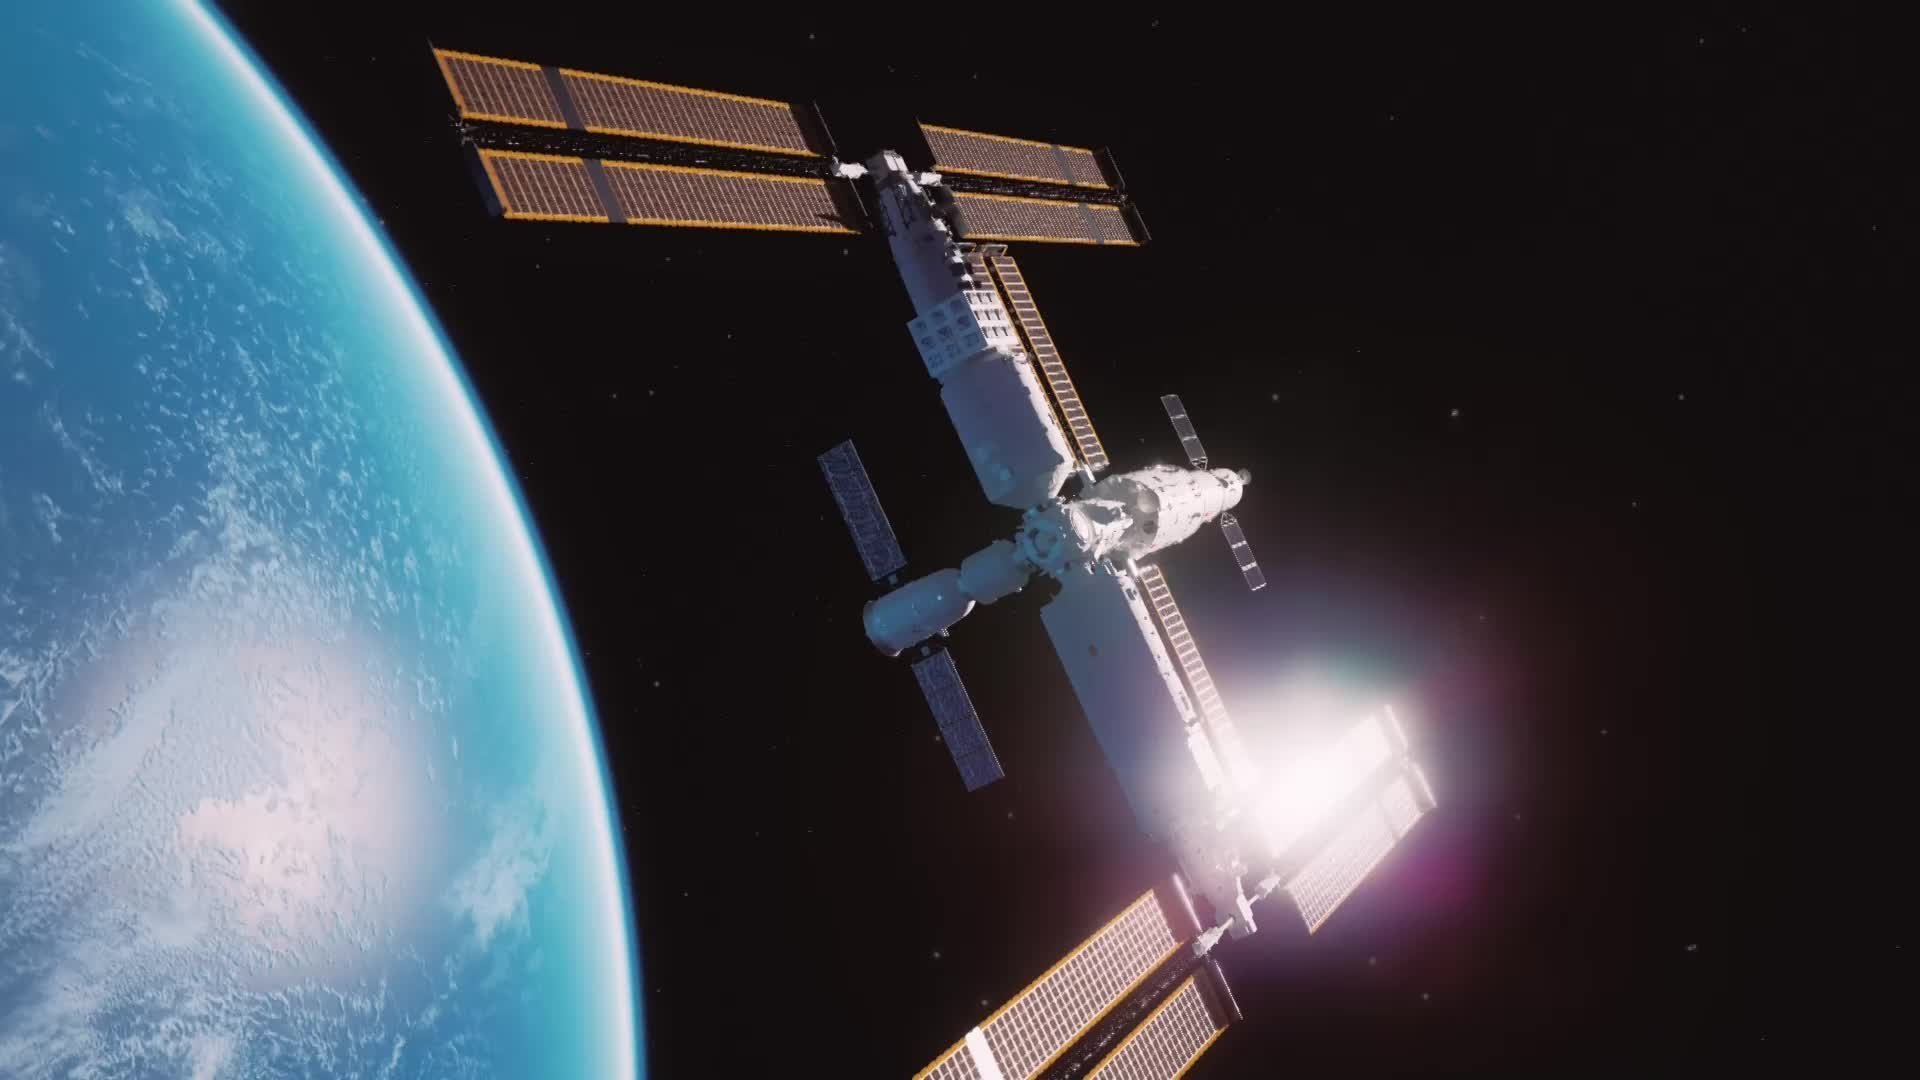 阿联酋确定宇航员人选 将在国际空间站生活工作6个月 - 科学探索 - cnBeta.COM